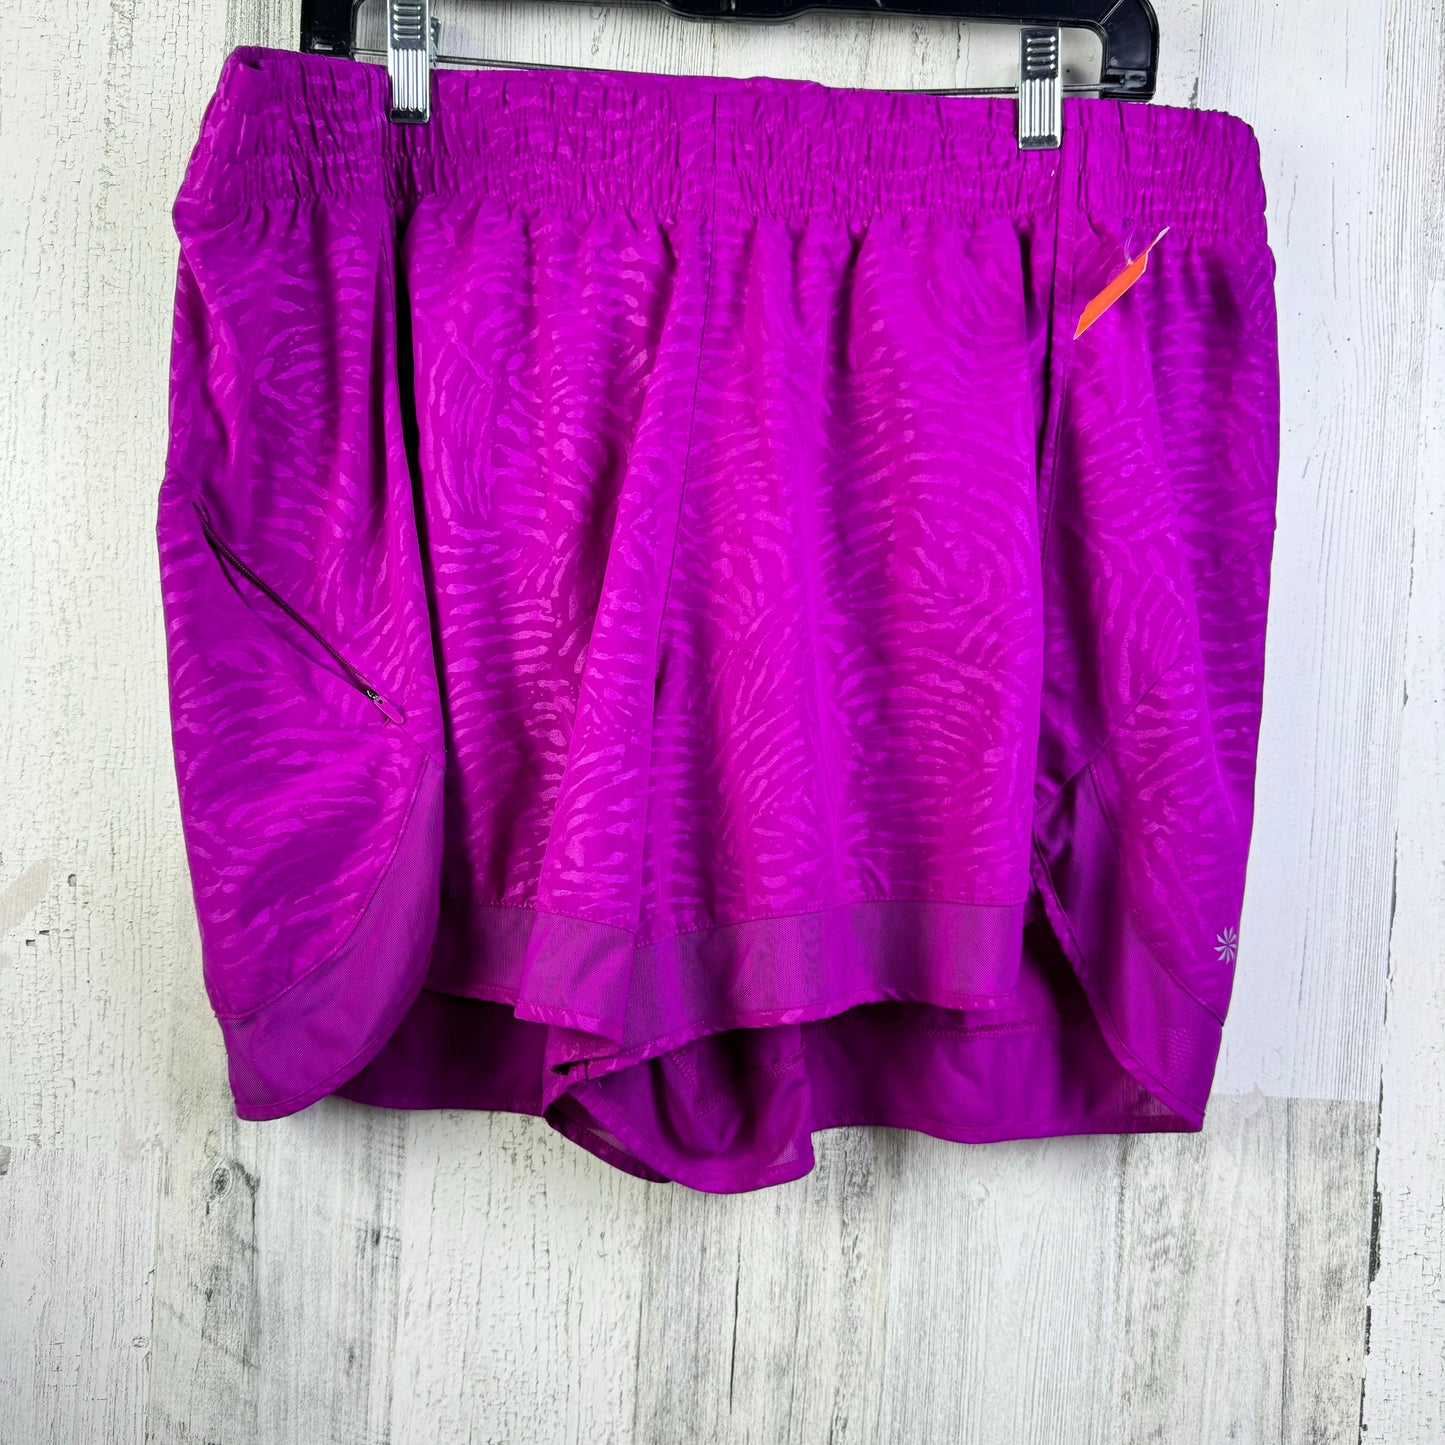 Purple Athletic Shorts Athleta, Size 1x